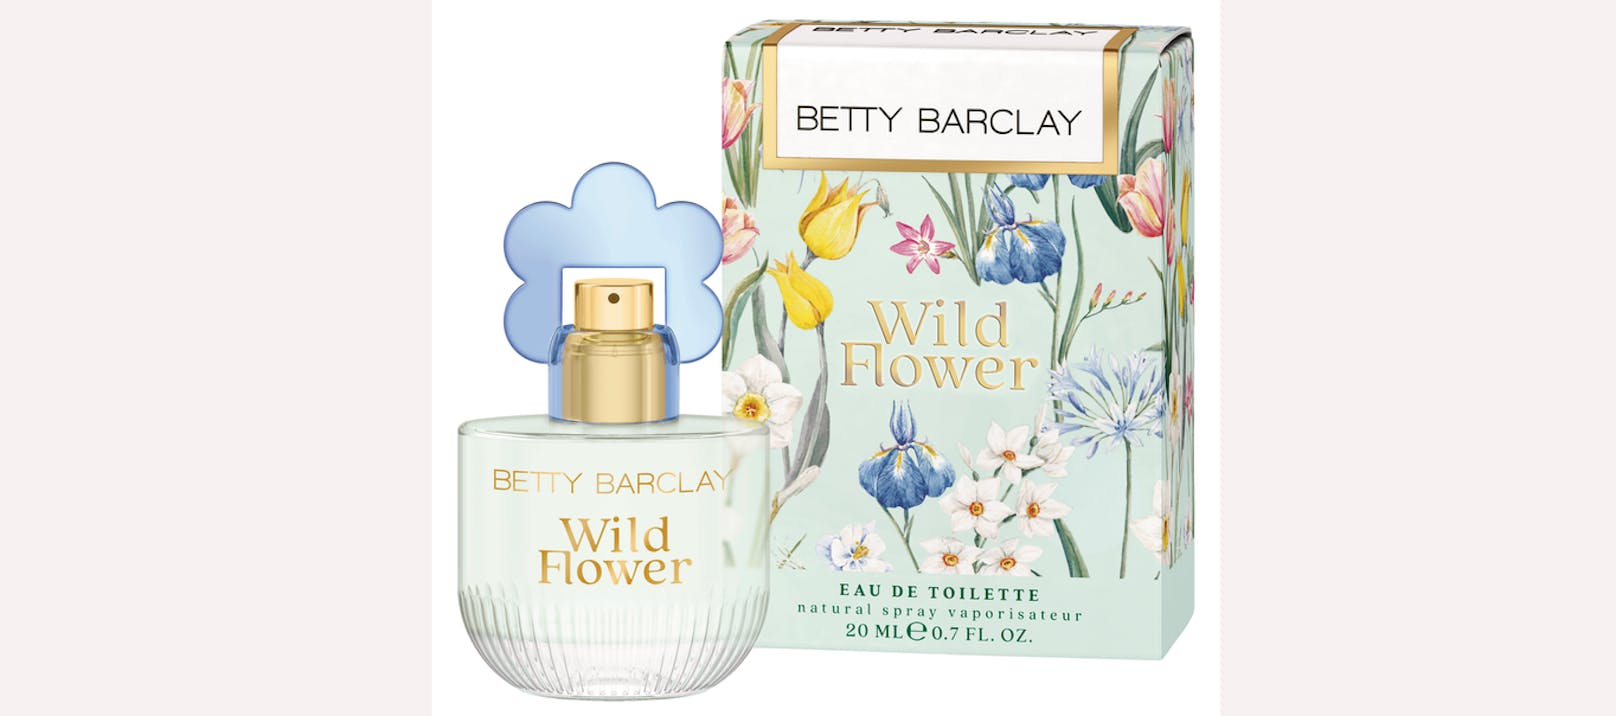 Gewinne den Duft "Wild Flower" von Betty Barclay!